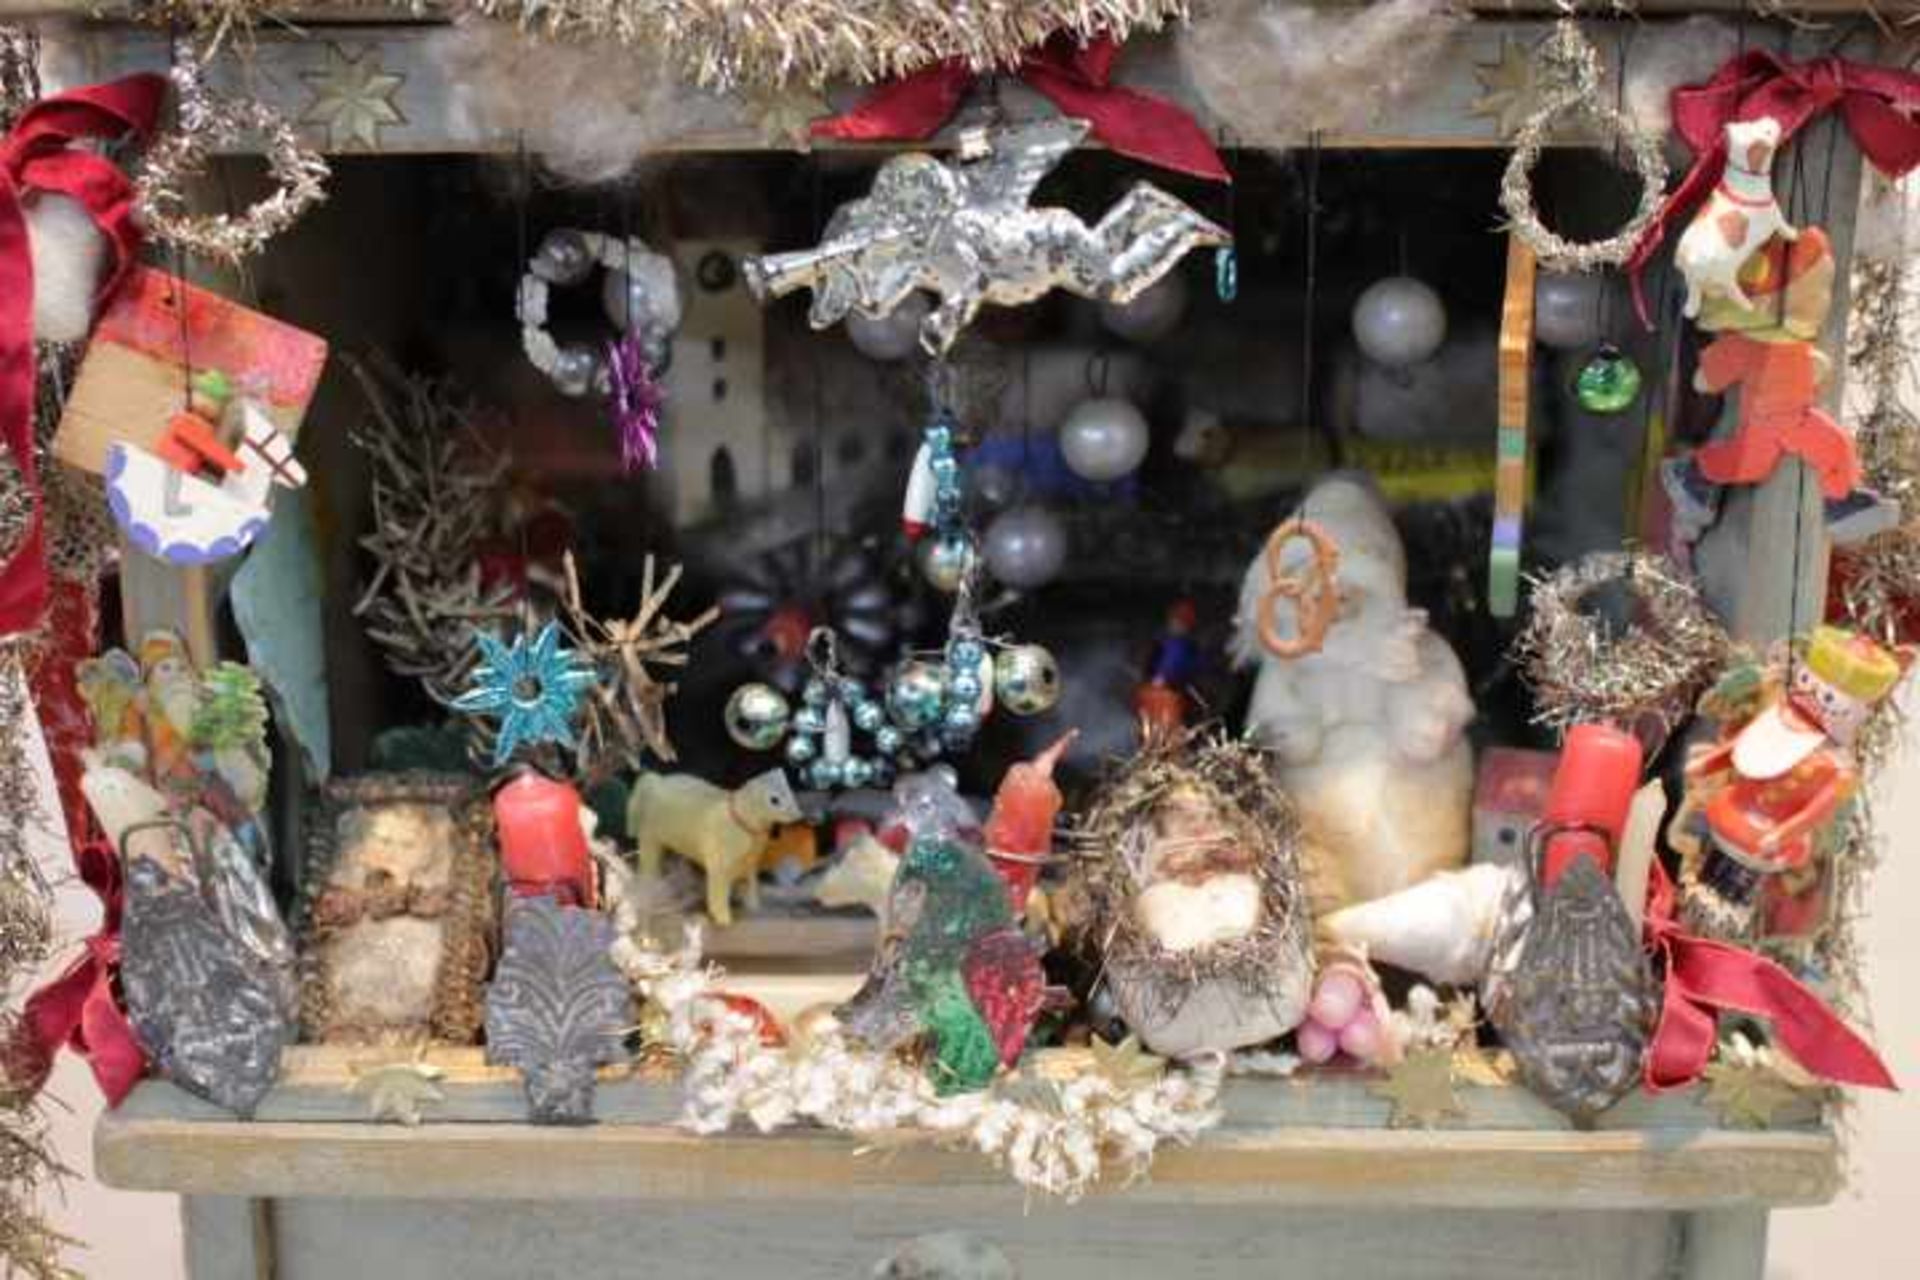 Erzgebirge Weihnachtsmarkt Standmit umfangreichem ZubehörFiguren,Glas,Tüten uvm.Guter - Bild 2 aus 2